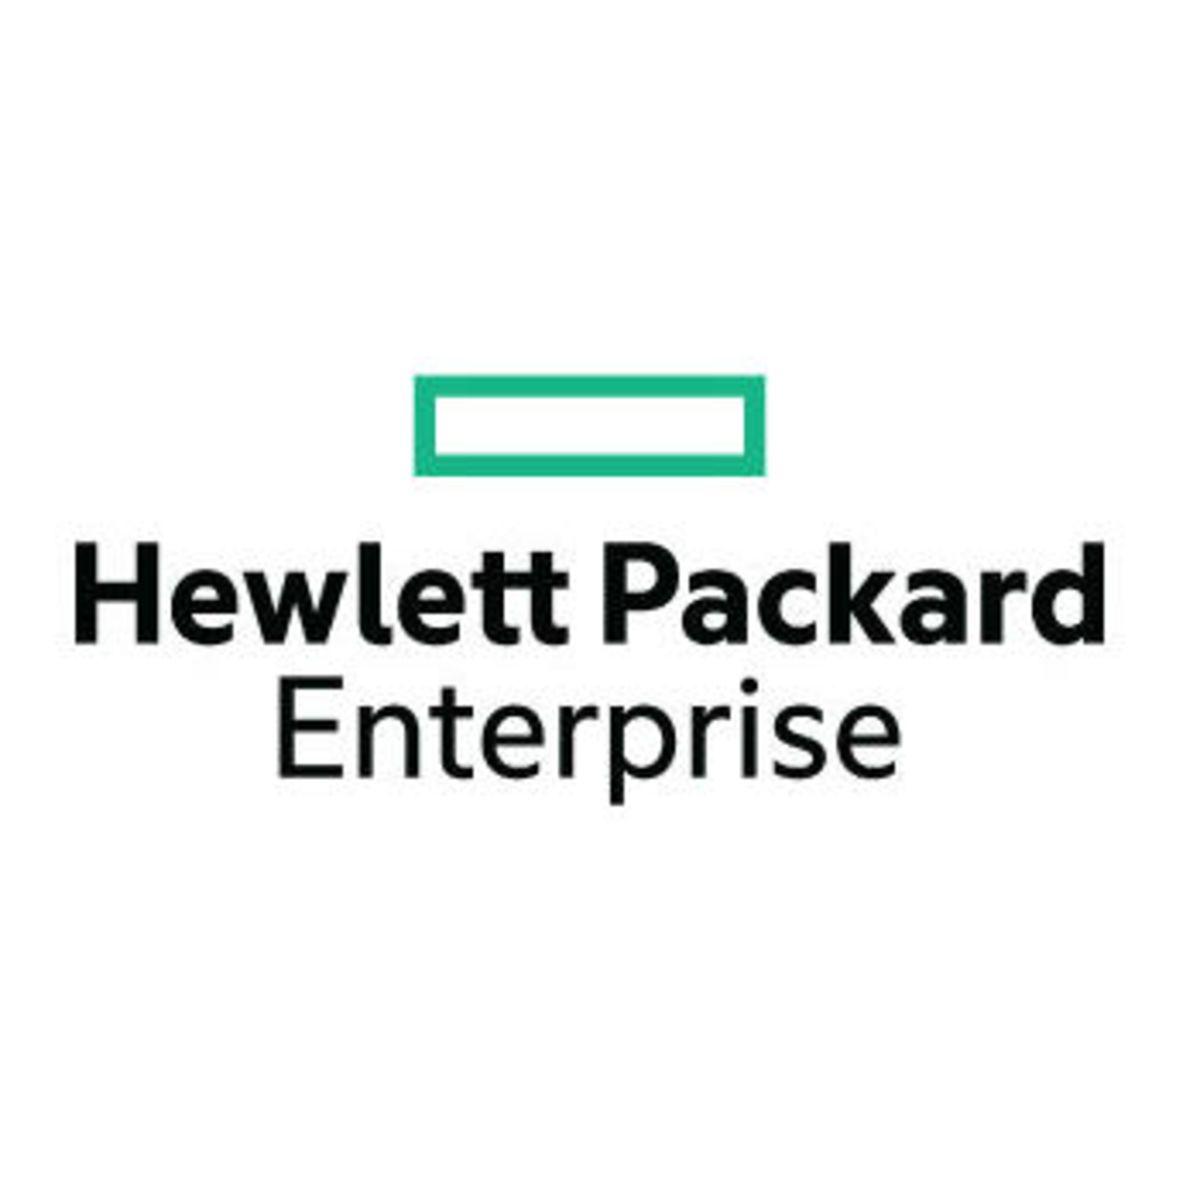 Hewlett-Packard Enterprise Logo - Hewlett-Packard-Enterprise-Logo - The Cheers